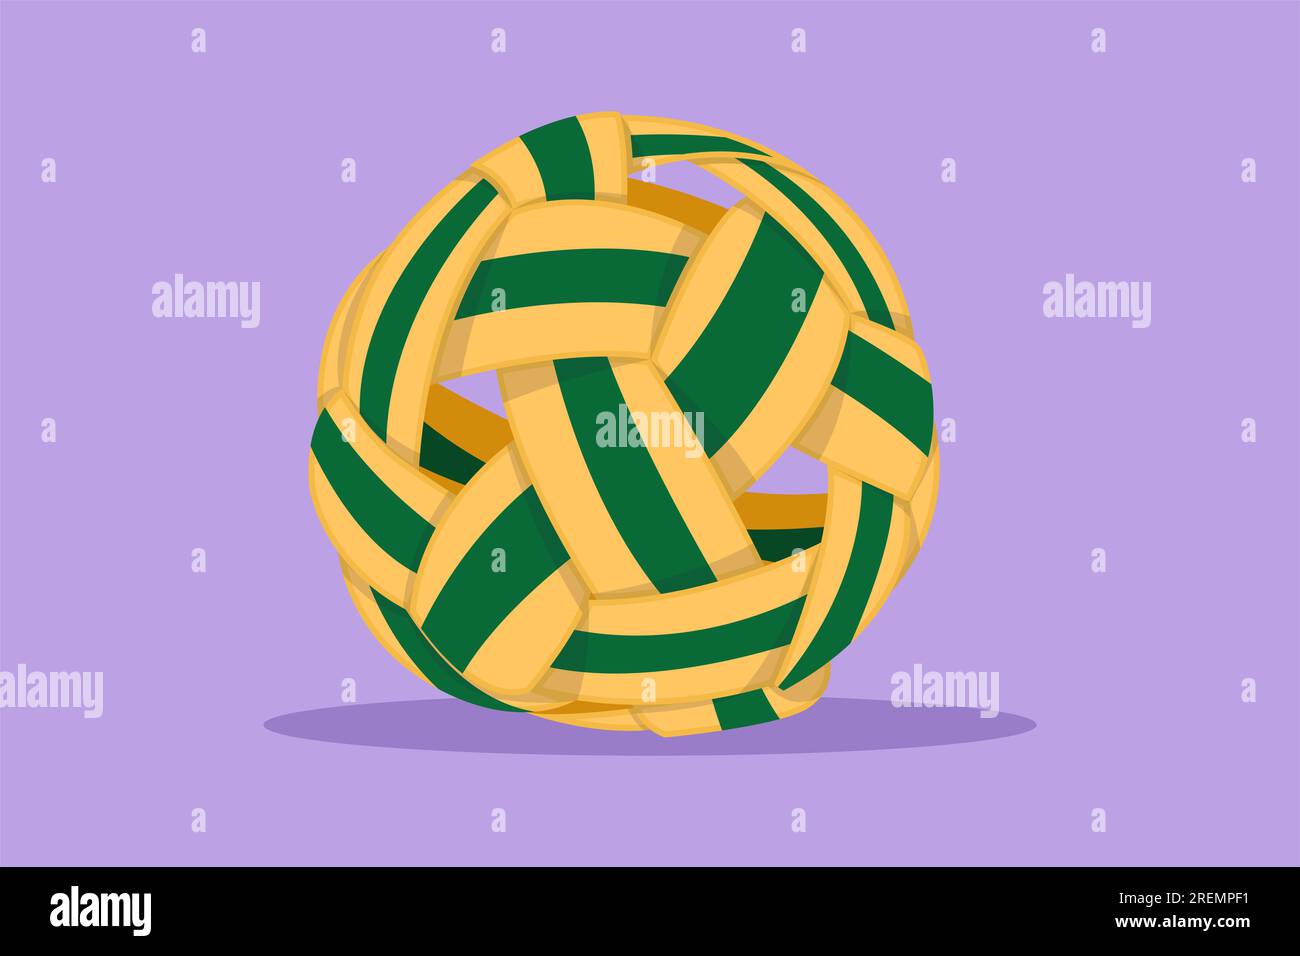 Dessin de conception plate graphique de sepak takraw ball ou logo de boule de rotin, icône, symbole. Coup de pied en ciseaux. Compétition sportive par équipe, tournoi, Sud-est ou AS Banque D'Images